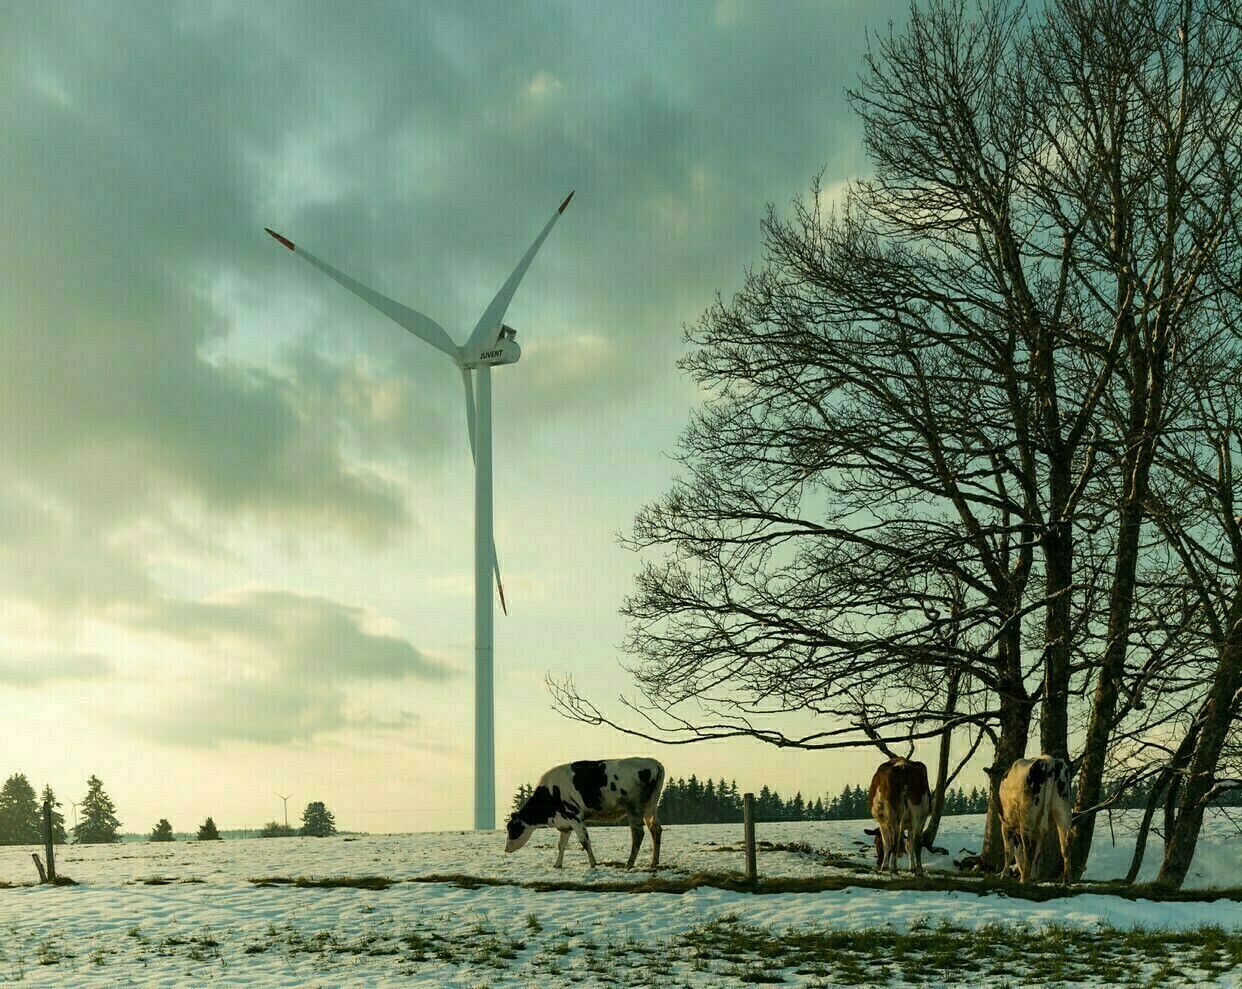 Infraschall: BAFU weist Studie von Windenergiegegner-Lobby Freie Landschaft kategorisch zurück